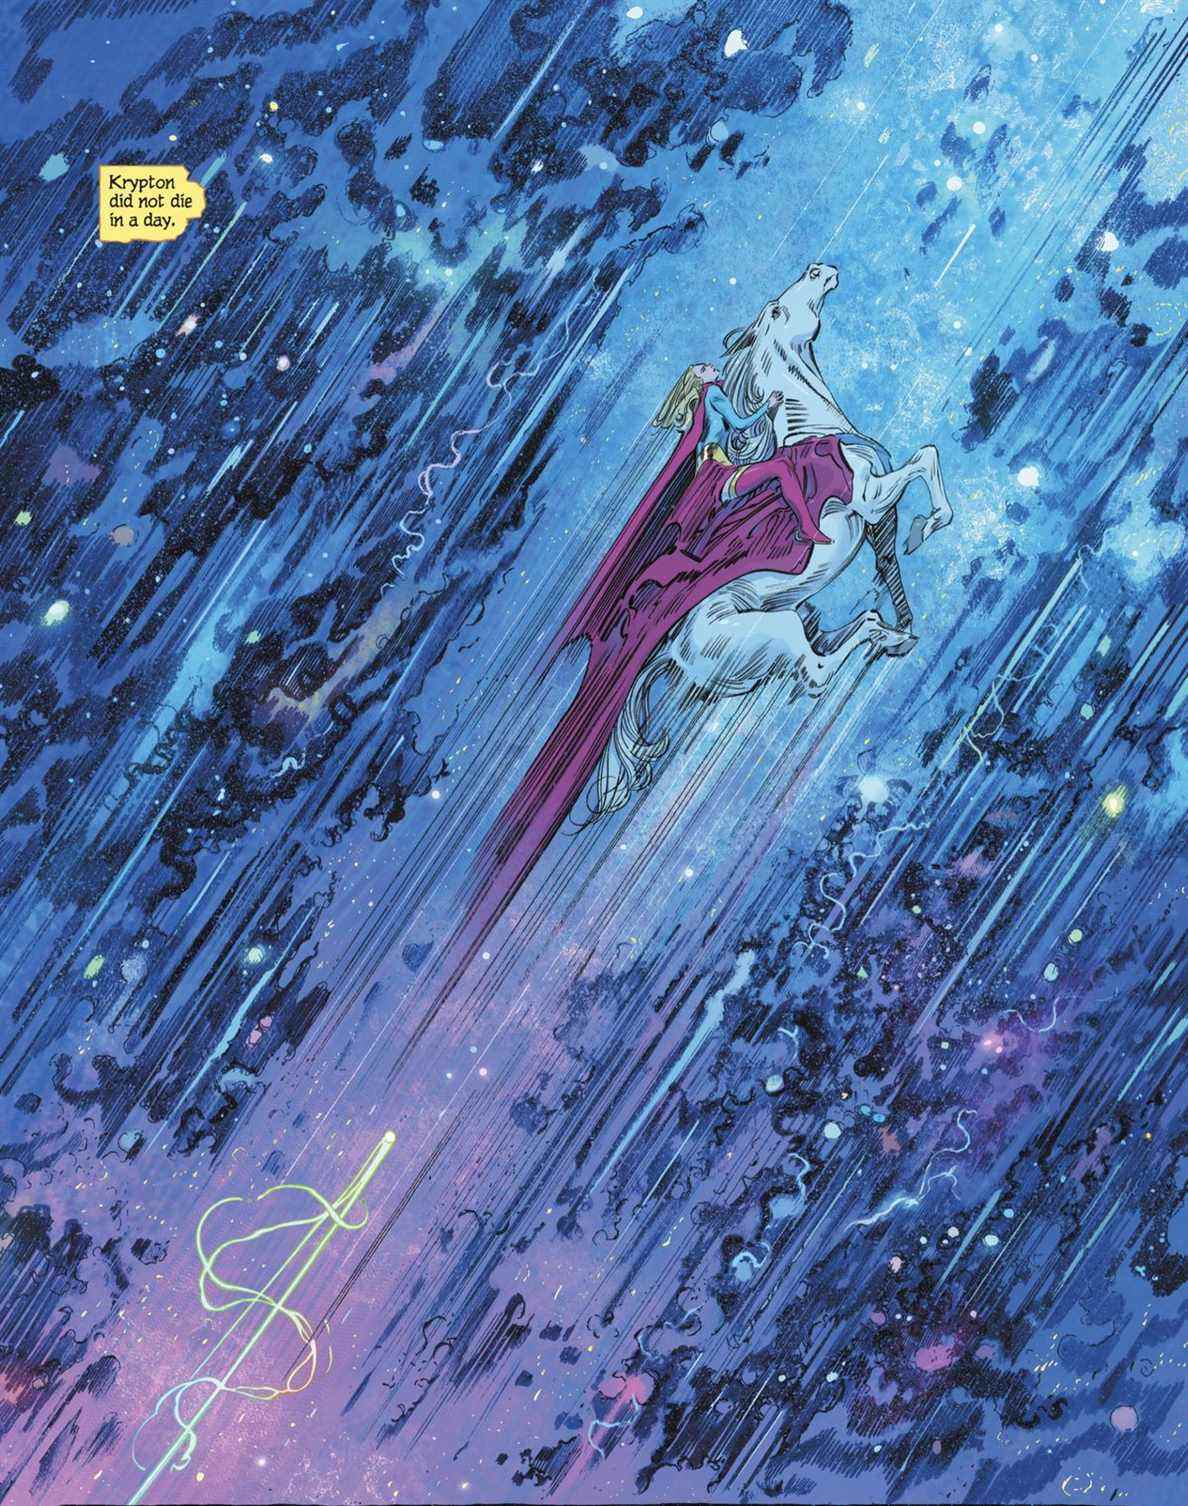 Supergirl chevauche Comet le Super-cheval à travers des étoiles bleues et roses à une vitesse pour briser les lois de la science et de la magie, poursuivie par une séquence arc-en-ciel de quelque chose dans Supergirl: Woman of Tomorrow # 6 (2021). 